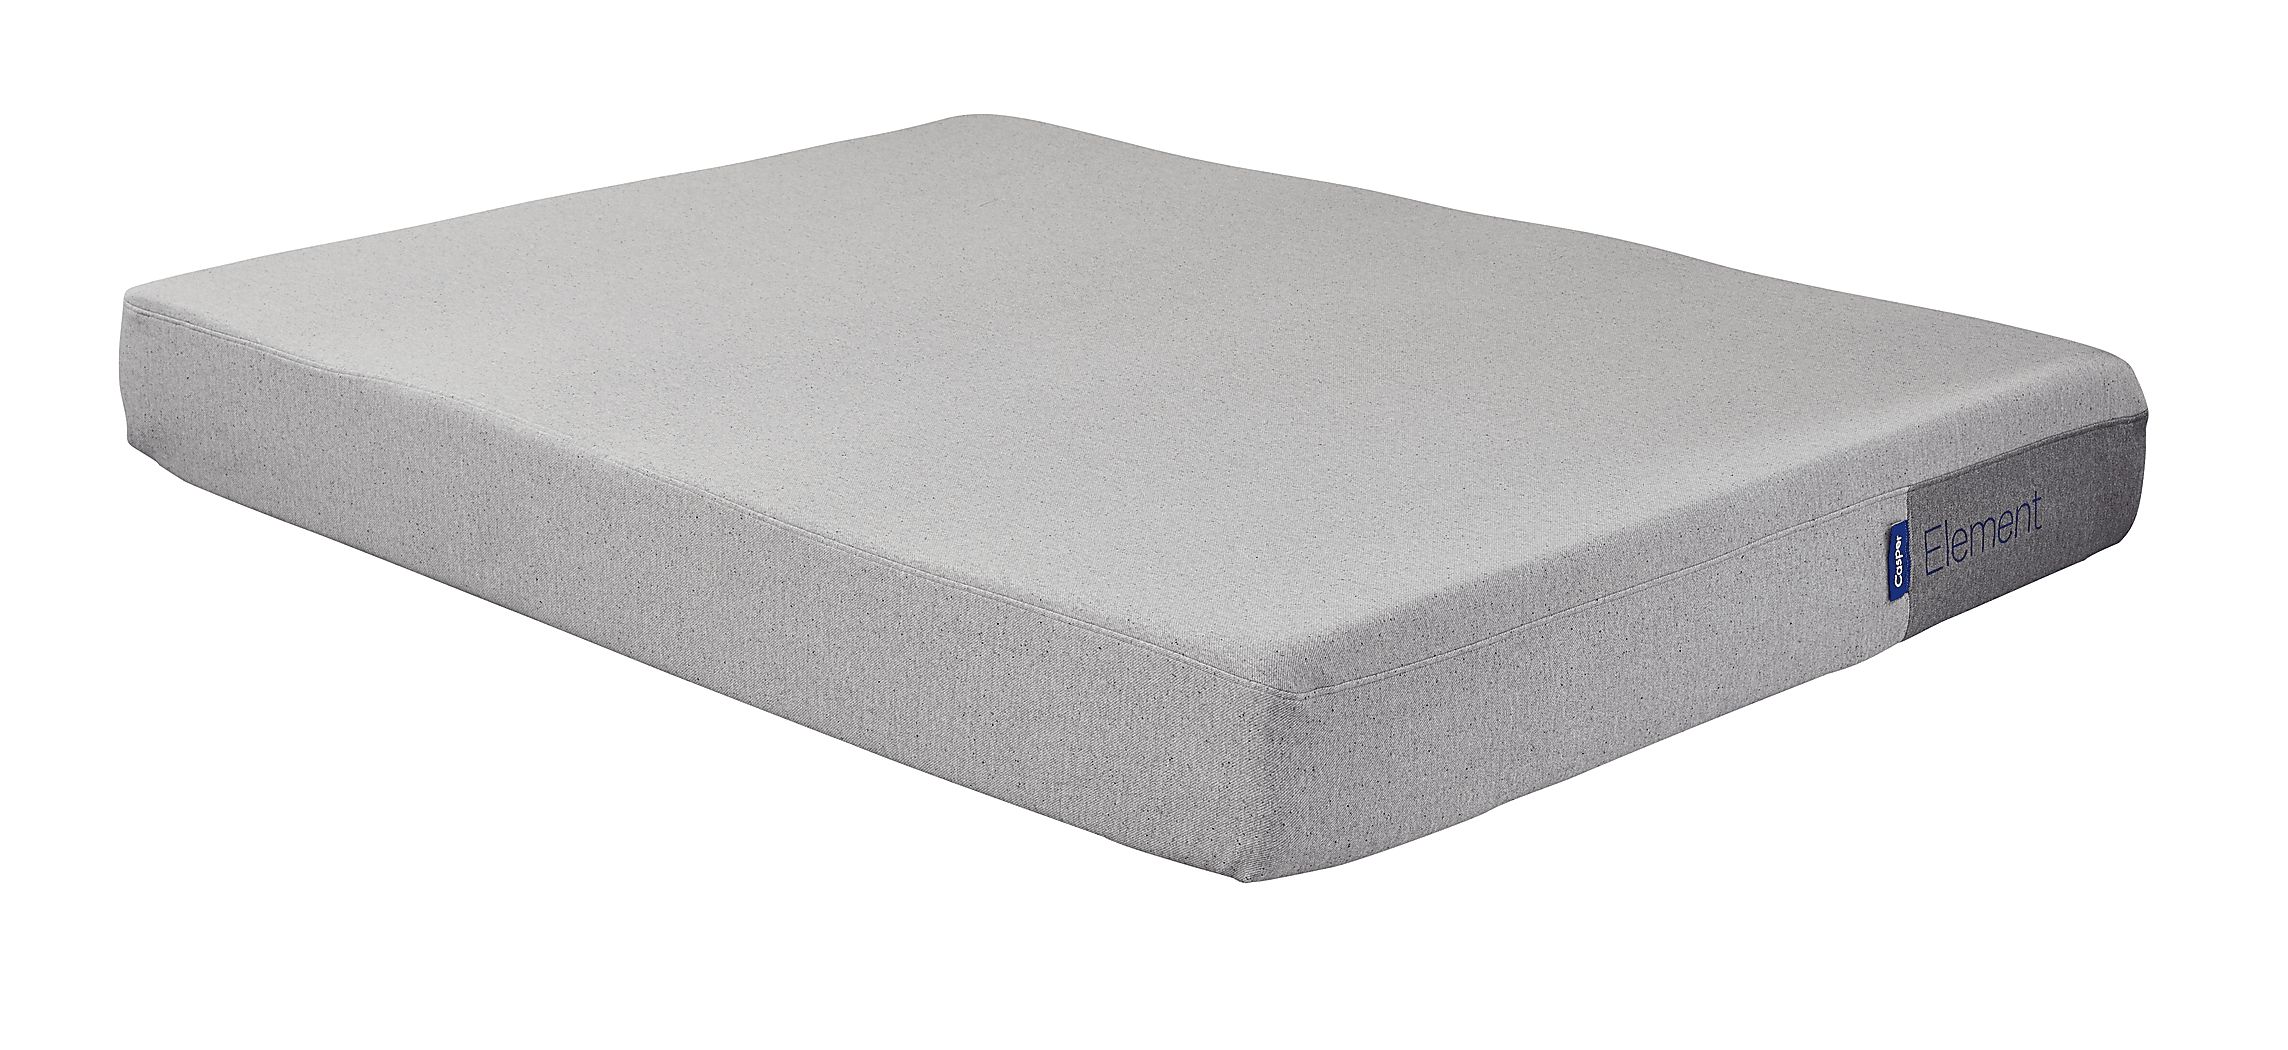 cost of casper twin mattress